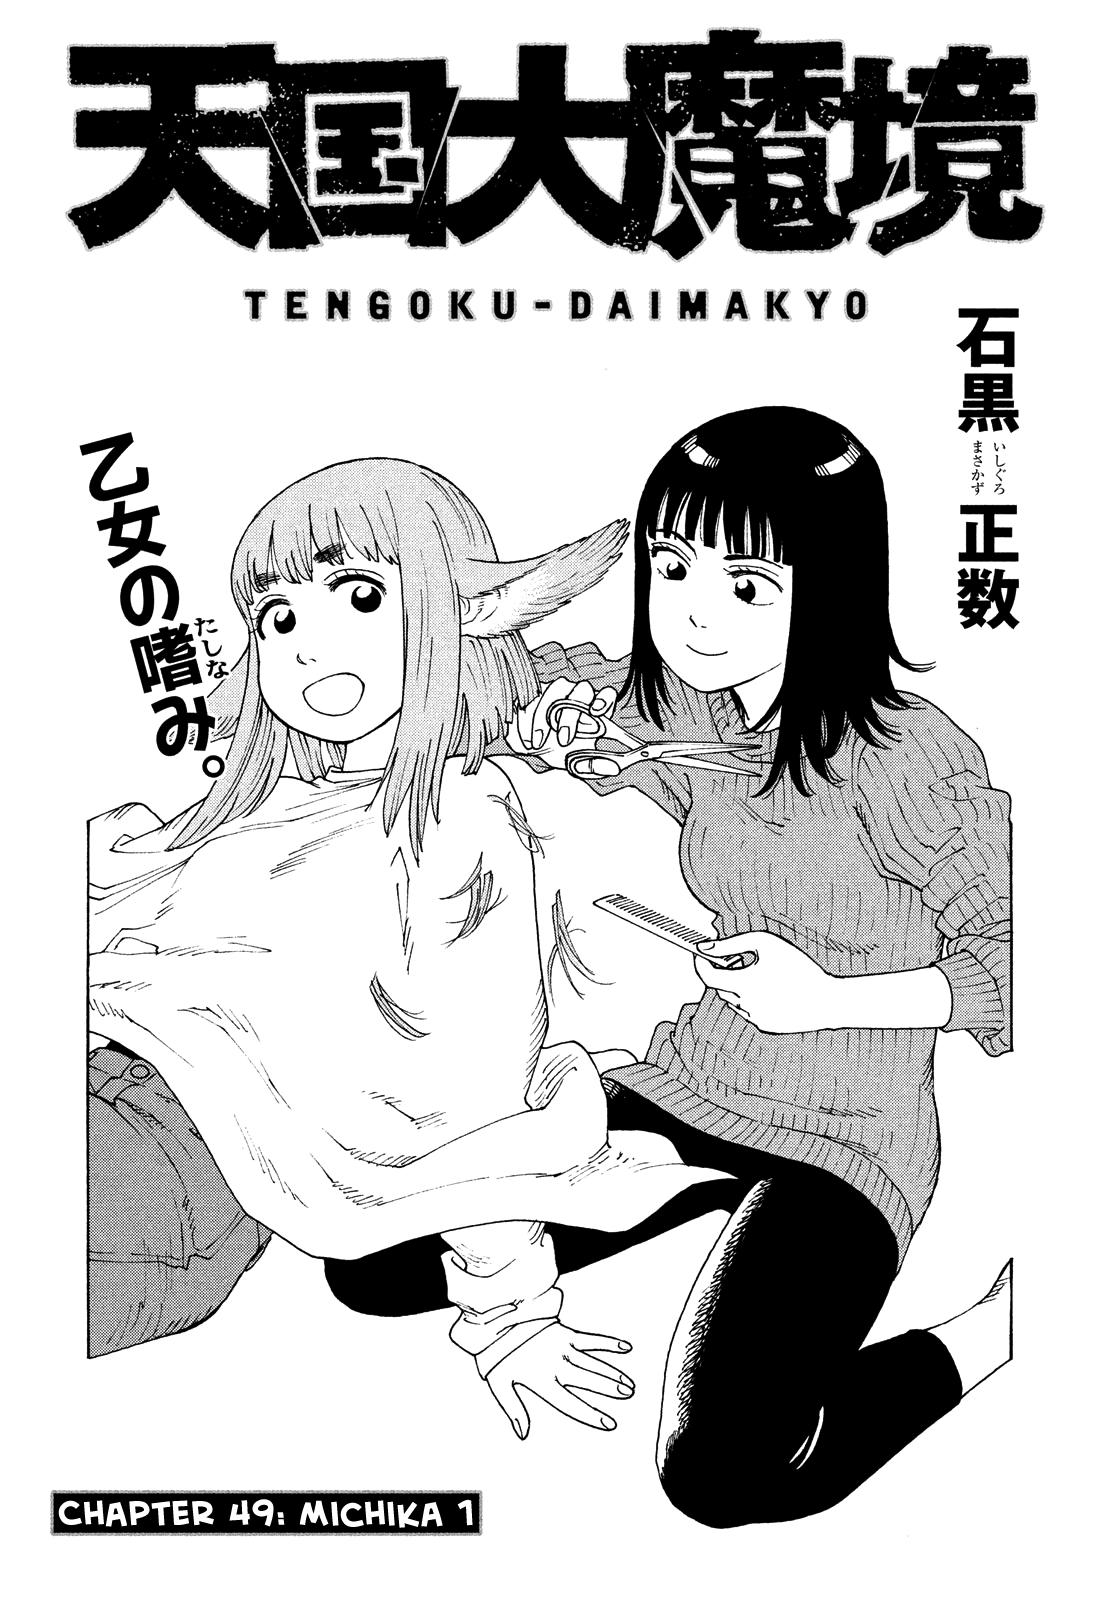 Tengoku Daimakyou Vol.8 Chapter 49: Michika ➀ page 6 - Mangakakalot